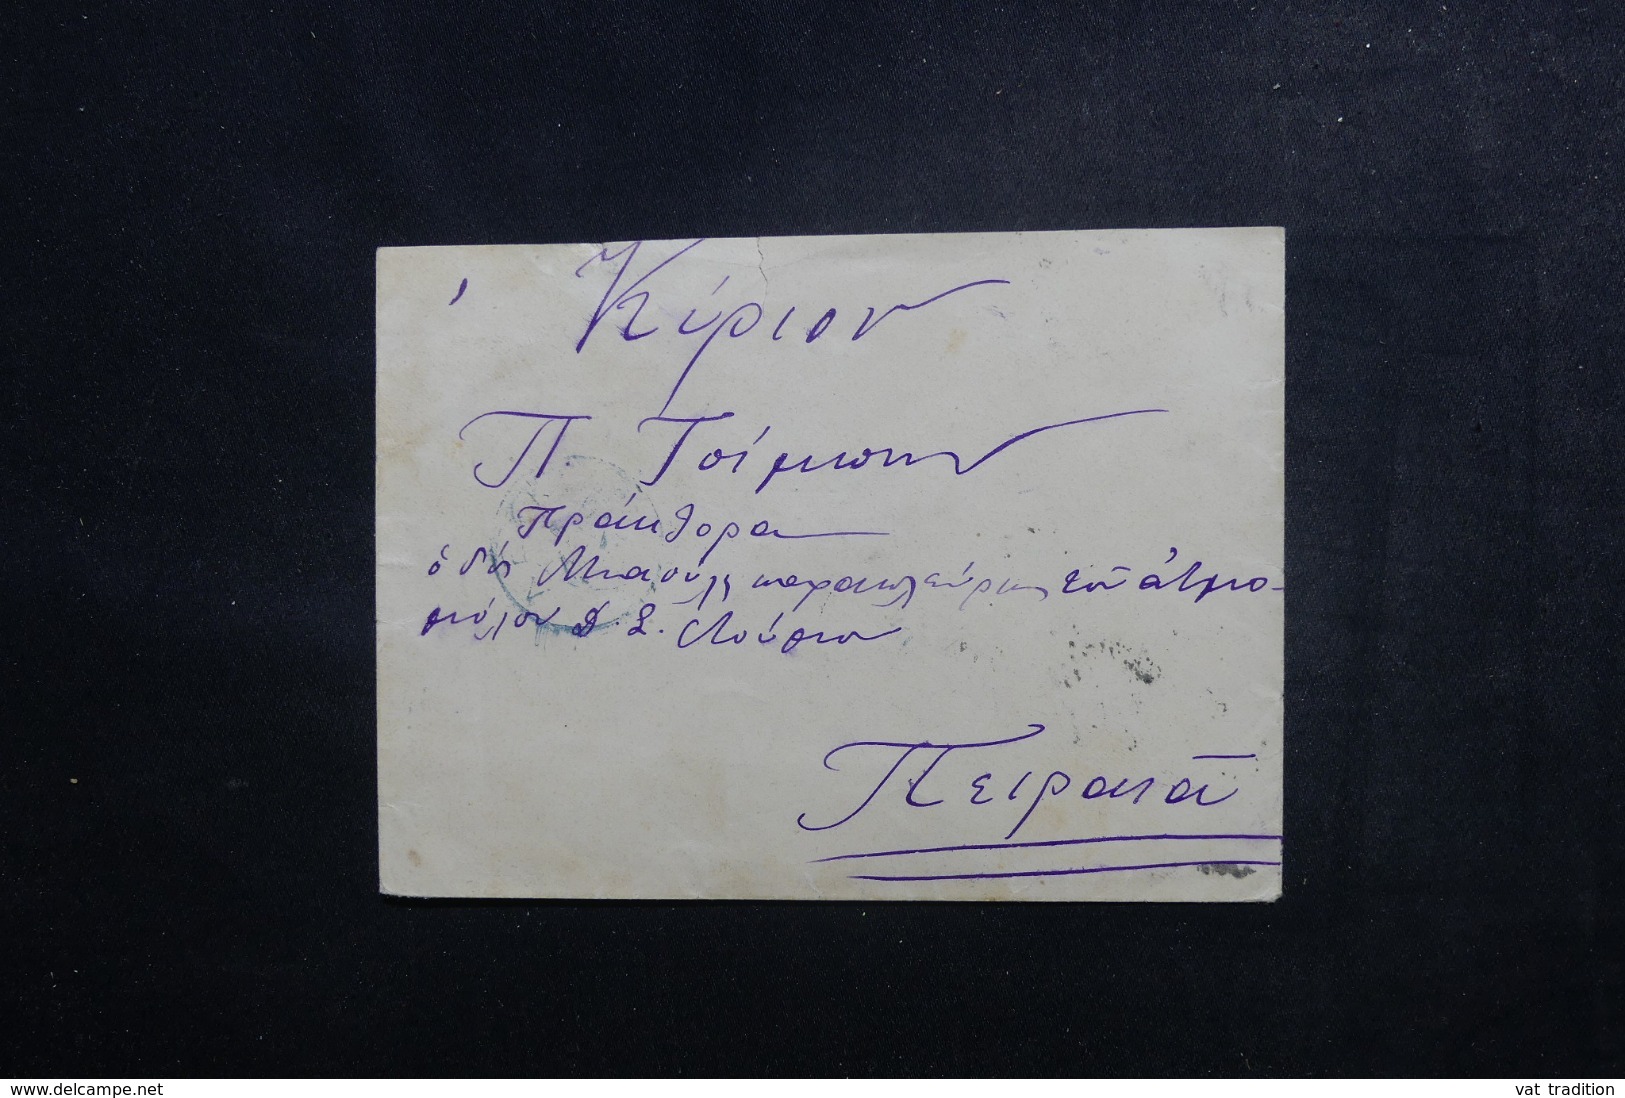 GRECE - Affranchissement Type Hermes En Paire Au Verso D'une Petite Enveloppe - L 48022 - Lettres & Documents